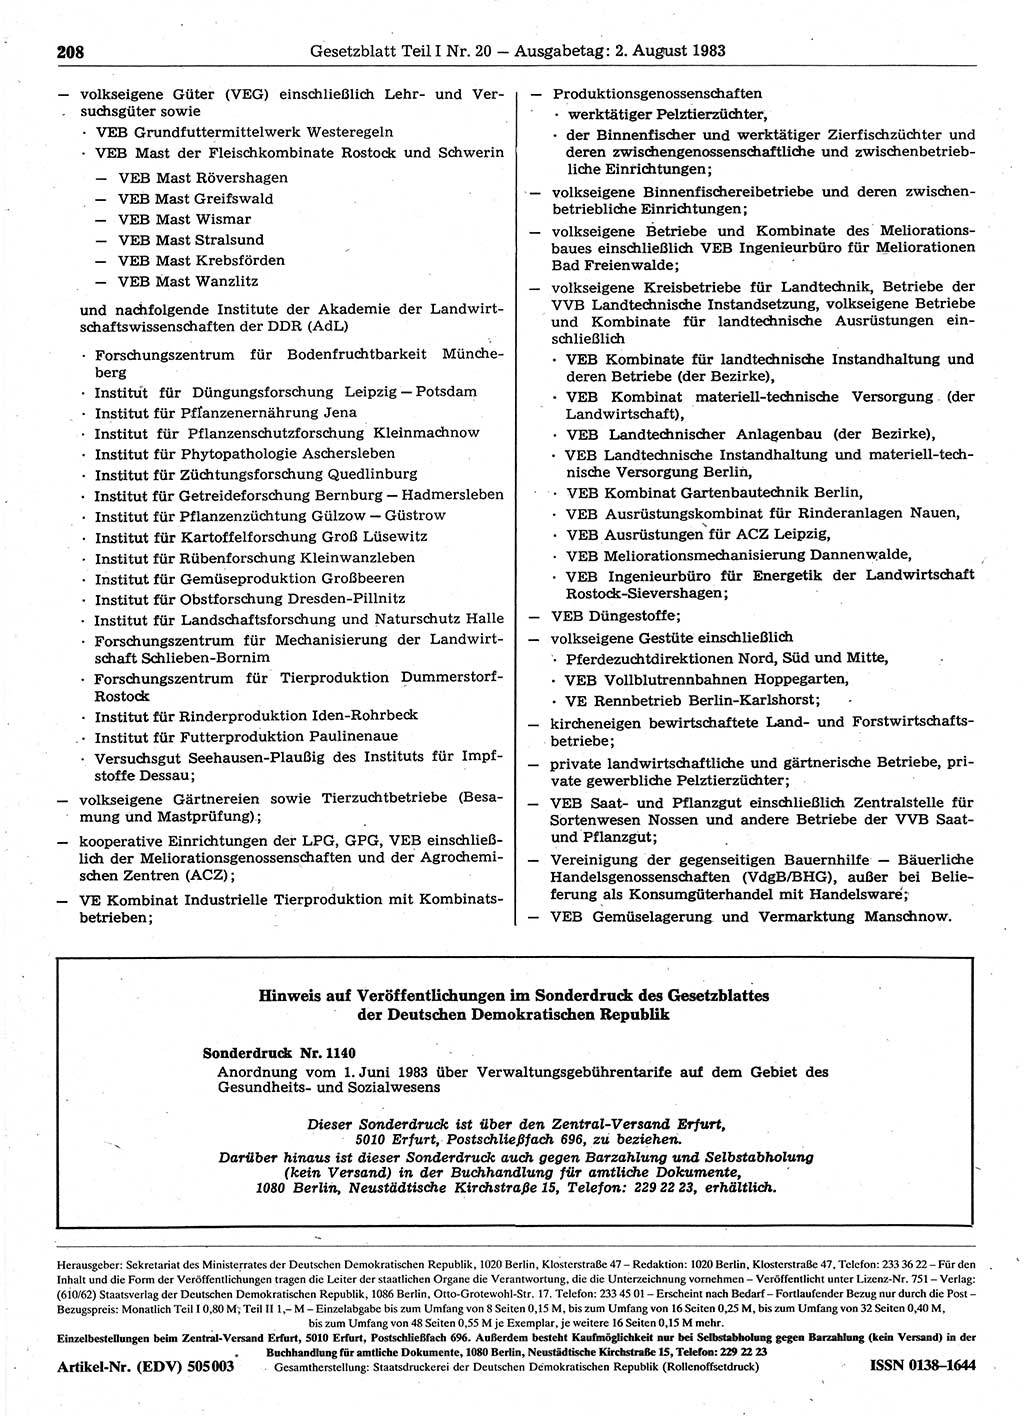 Gesetzblatt (GBl.) der Deutschen Demokratischen Republik (DDR) Teil Ⅰ 1983, Seite 208 (GBl. DDR Ⅰ 1983, S. 208)